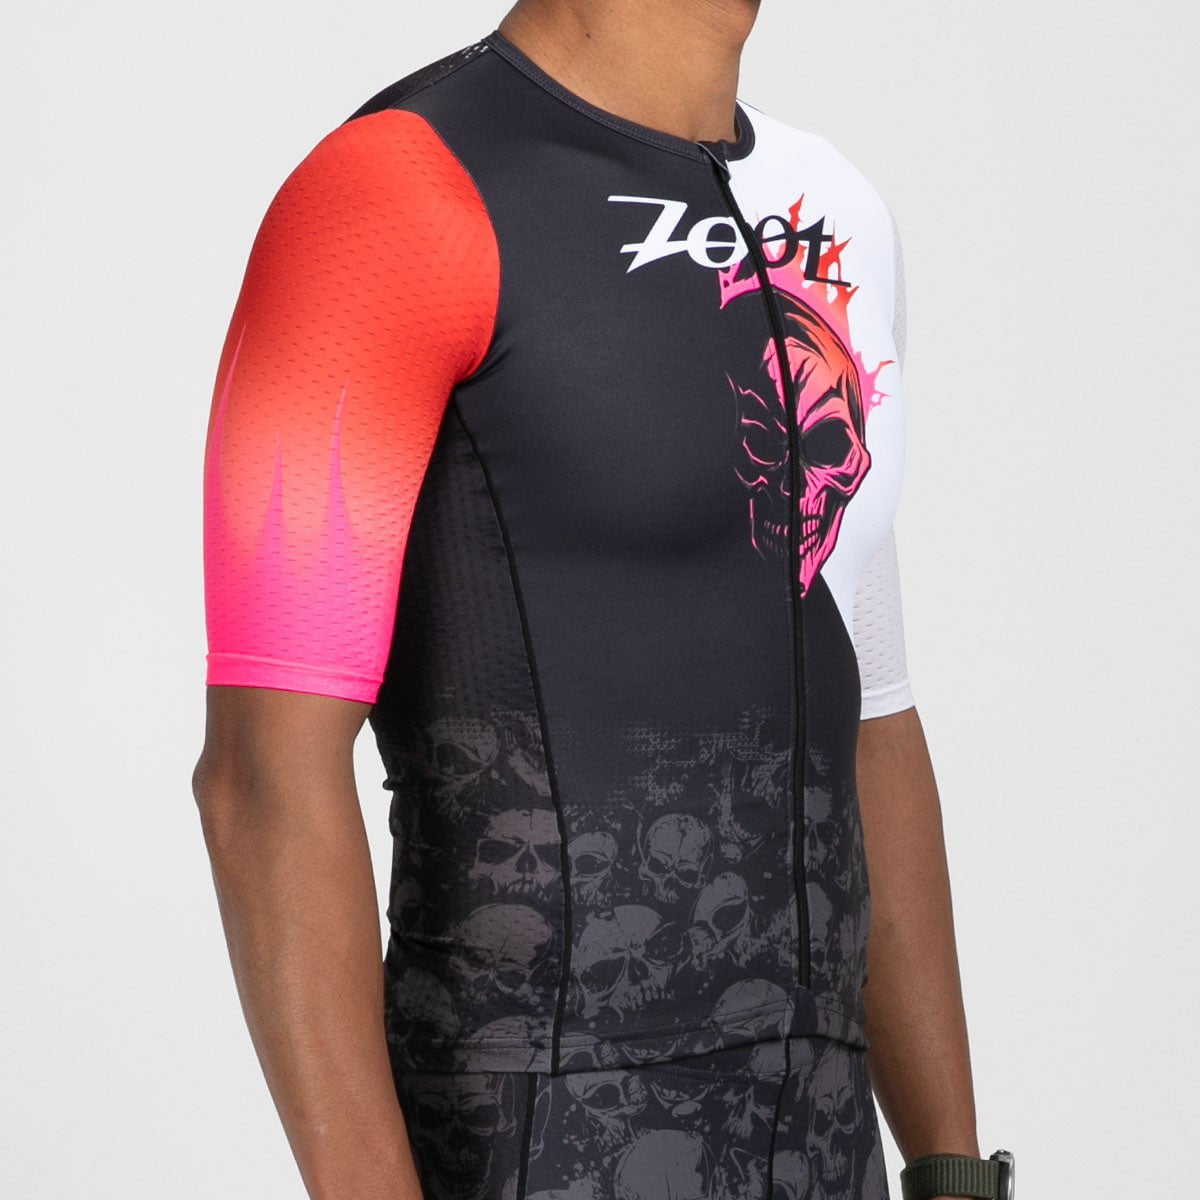 Zoot Sports TRI TOPS Men's Ltd Tri Aero Jersey - Darkside